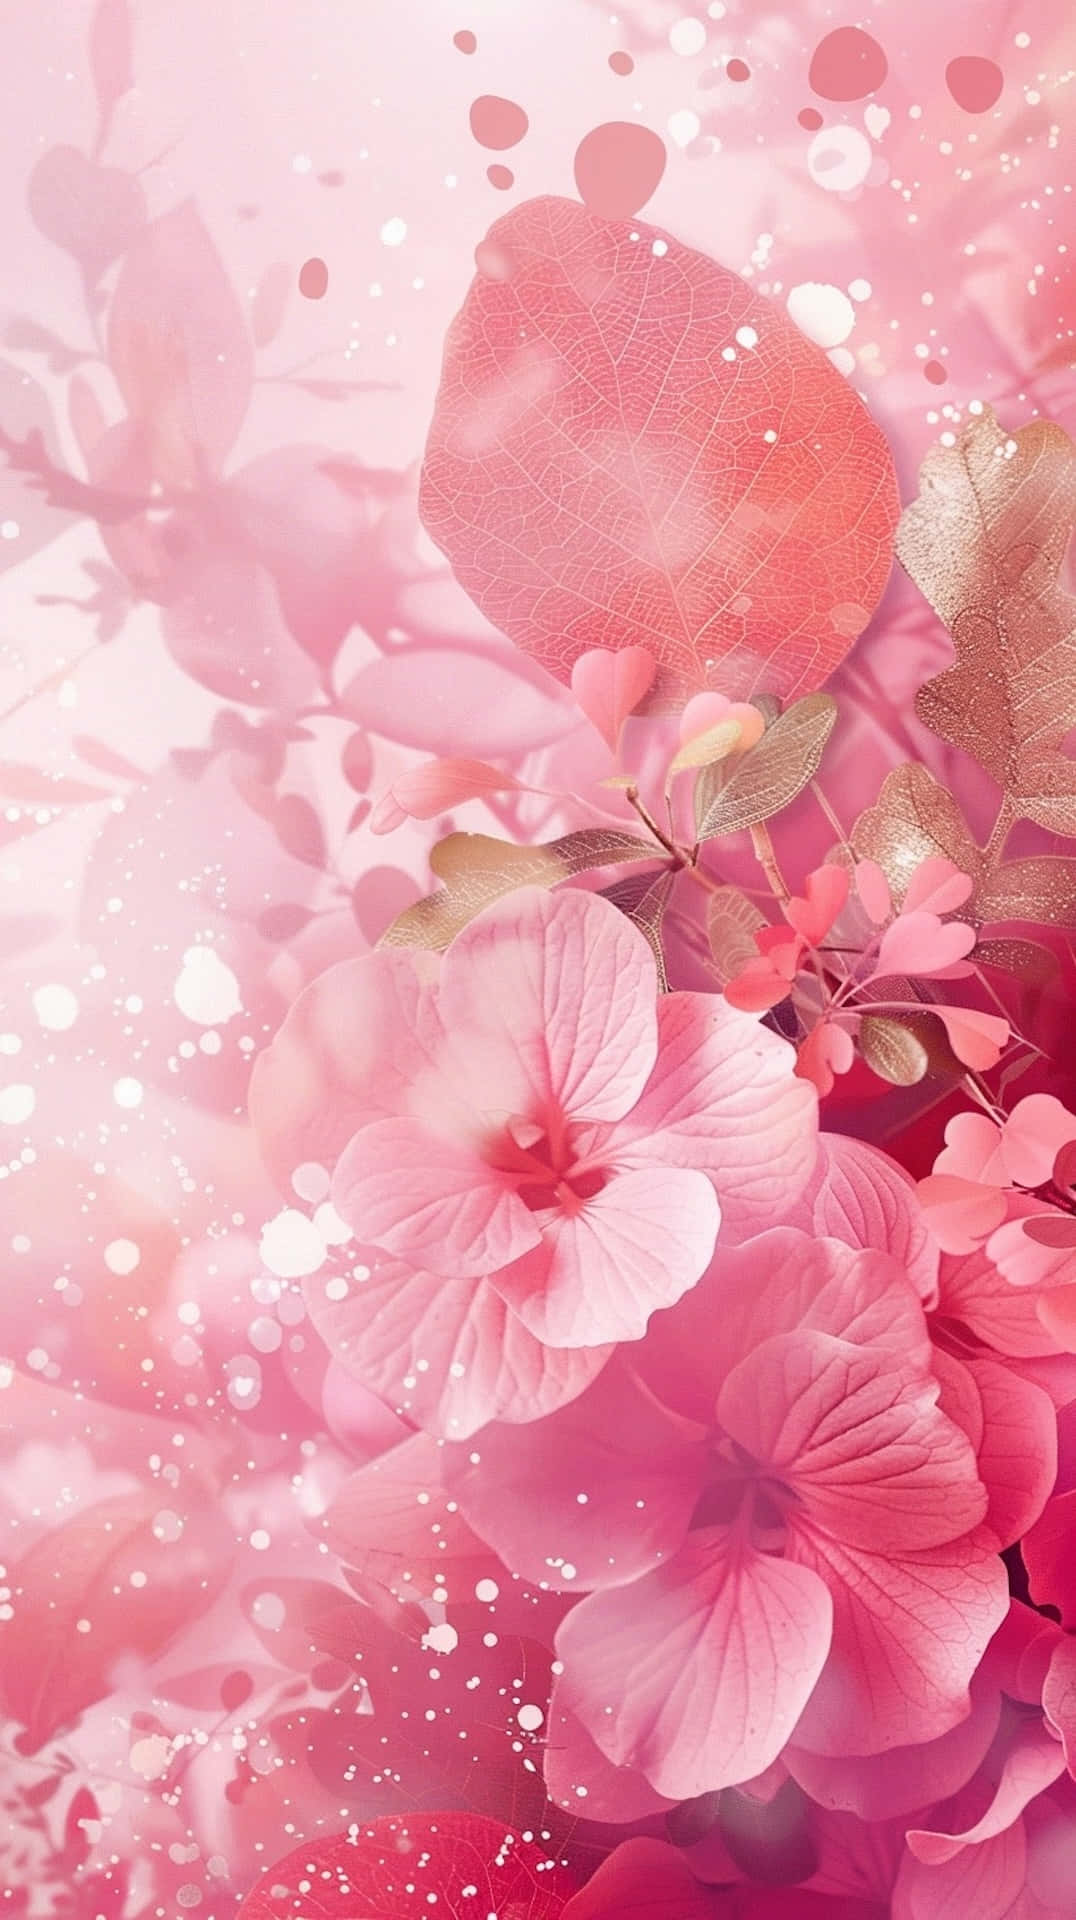 Pink Floral Fantasy Background Wallpaper